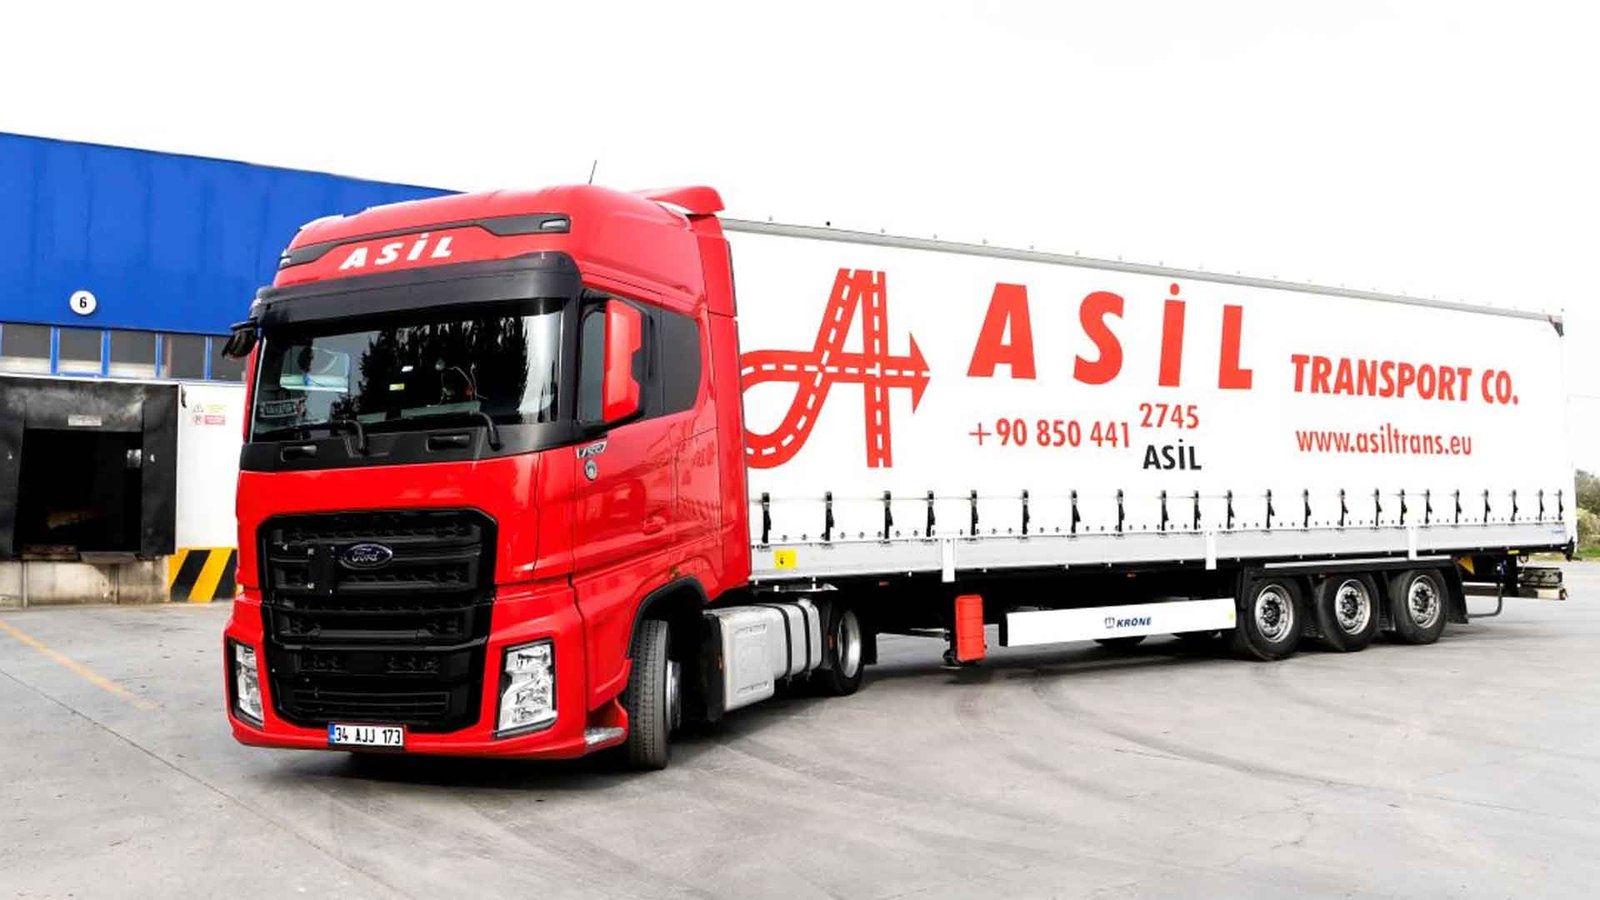 Asil Transport Co. Teknolojiye Yatırım Yaparak Lojistik Sektöründe Öncü Olmaya Devam Ediyor (3)